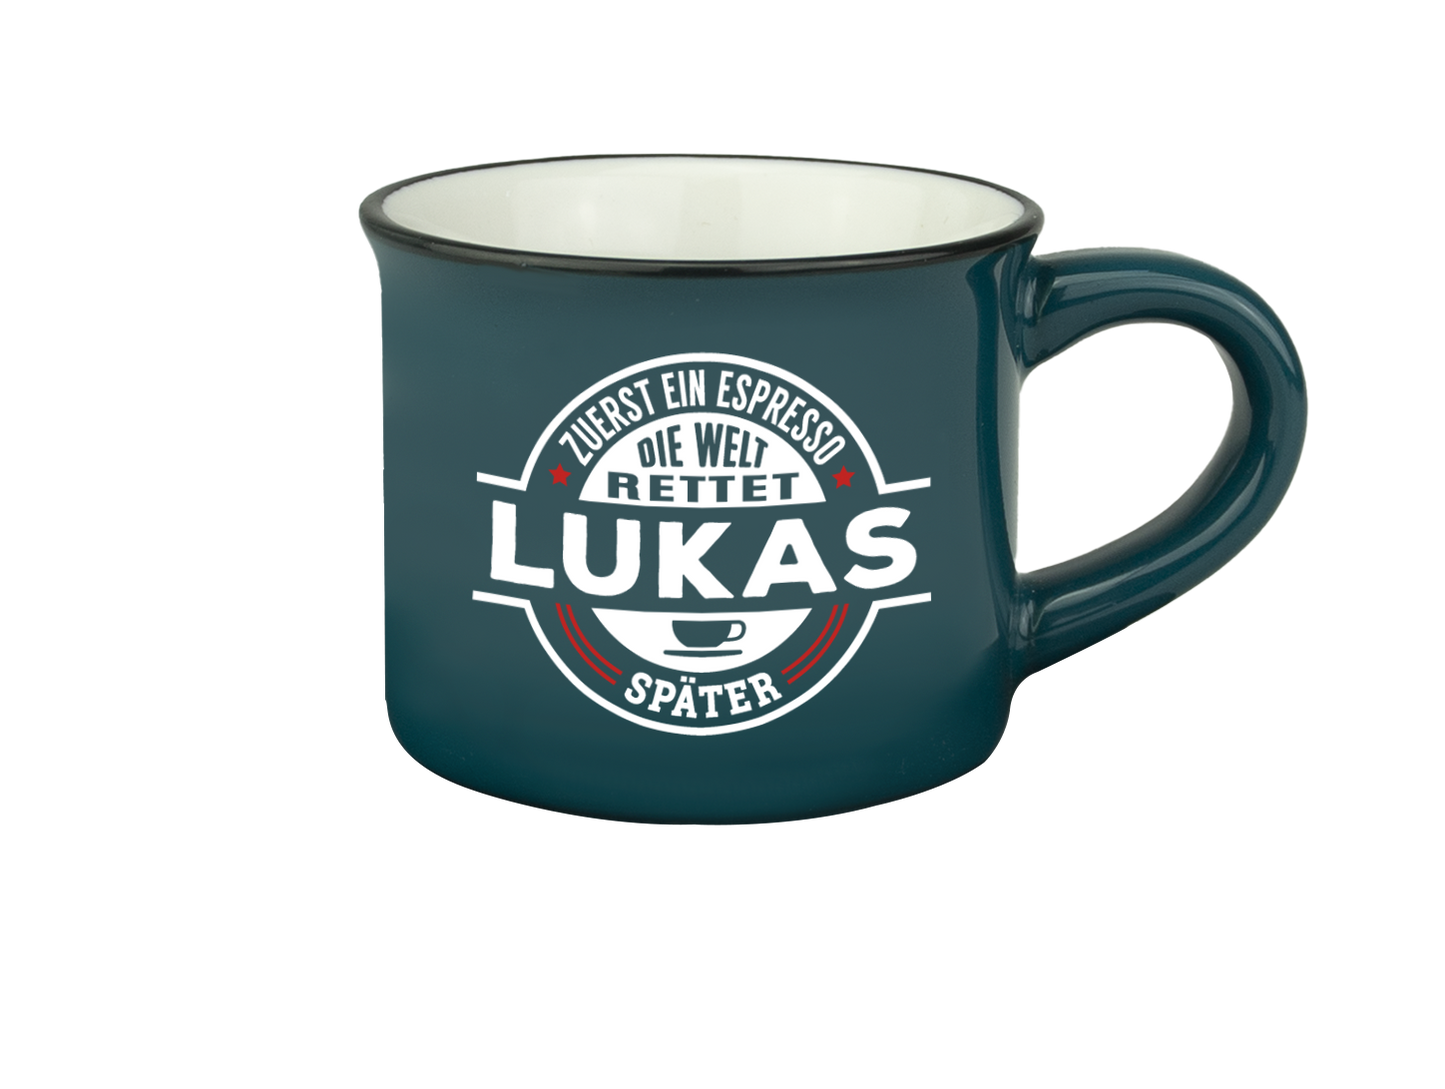 H & H Espresso-Tasse - Zuerst ein Espresso, die Welt rettet Lukas später